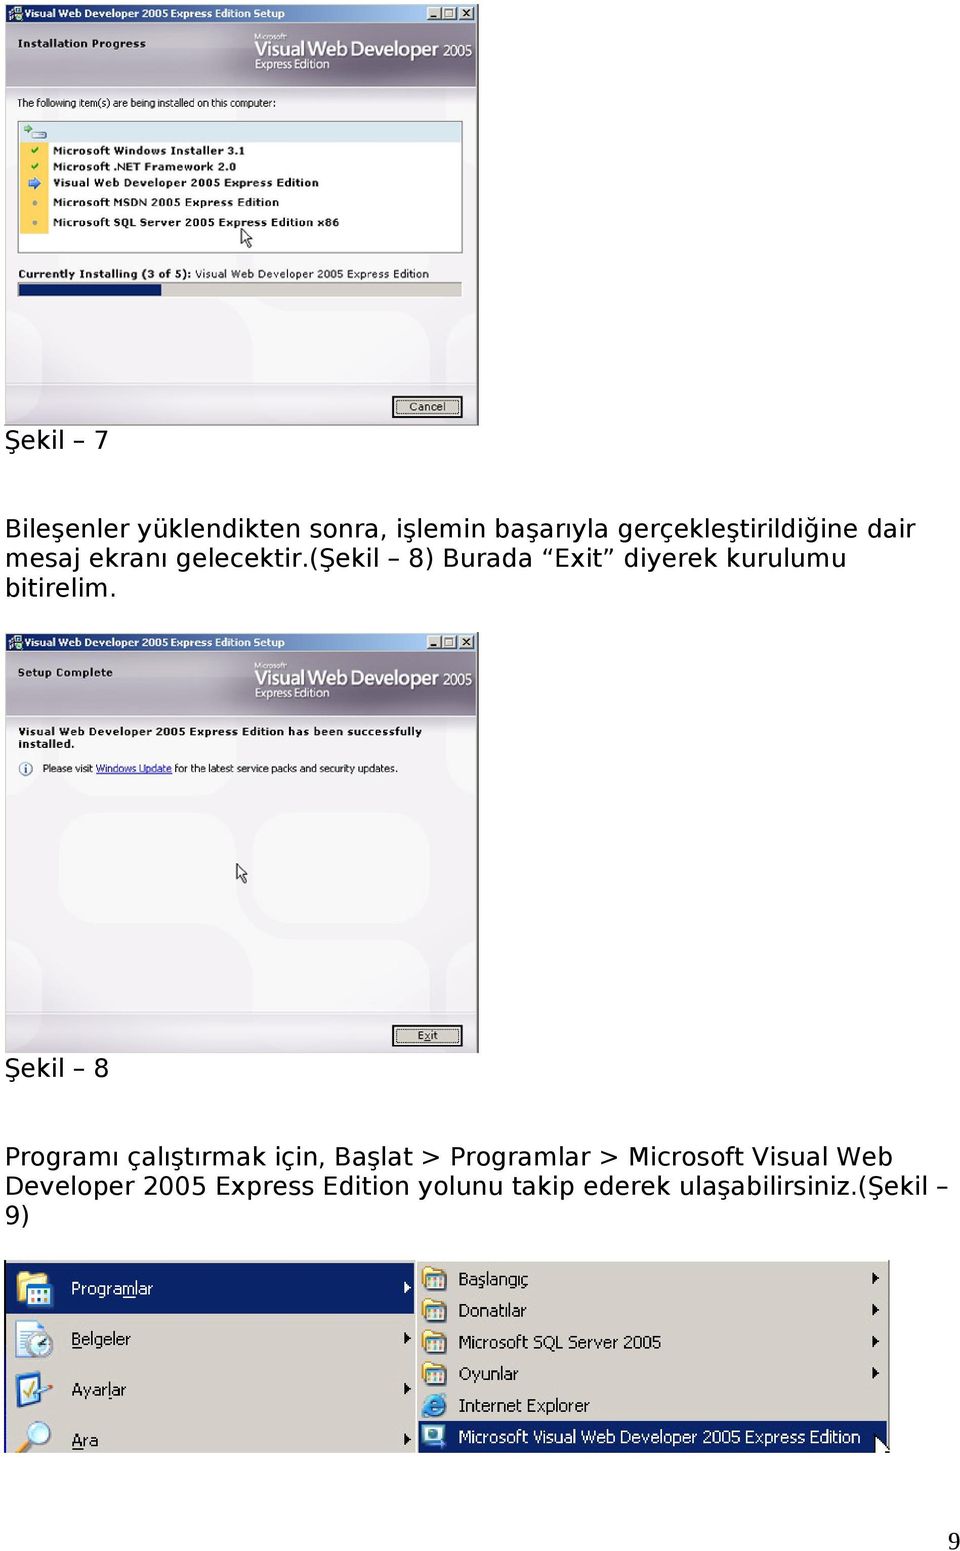 Şekil 8 Programı çalıştırmak için, Başlat > Programlar > Microsoft Visual Web